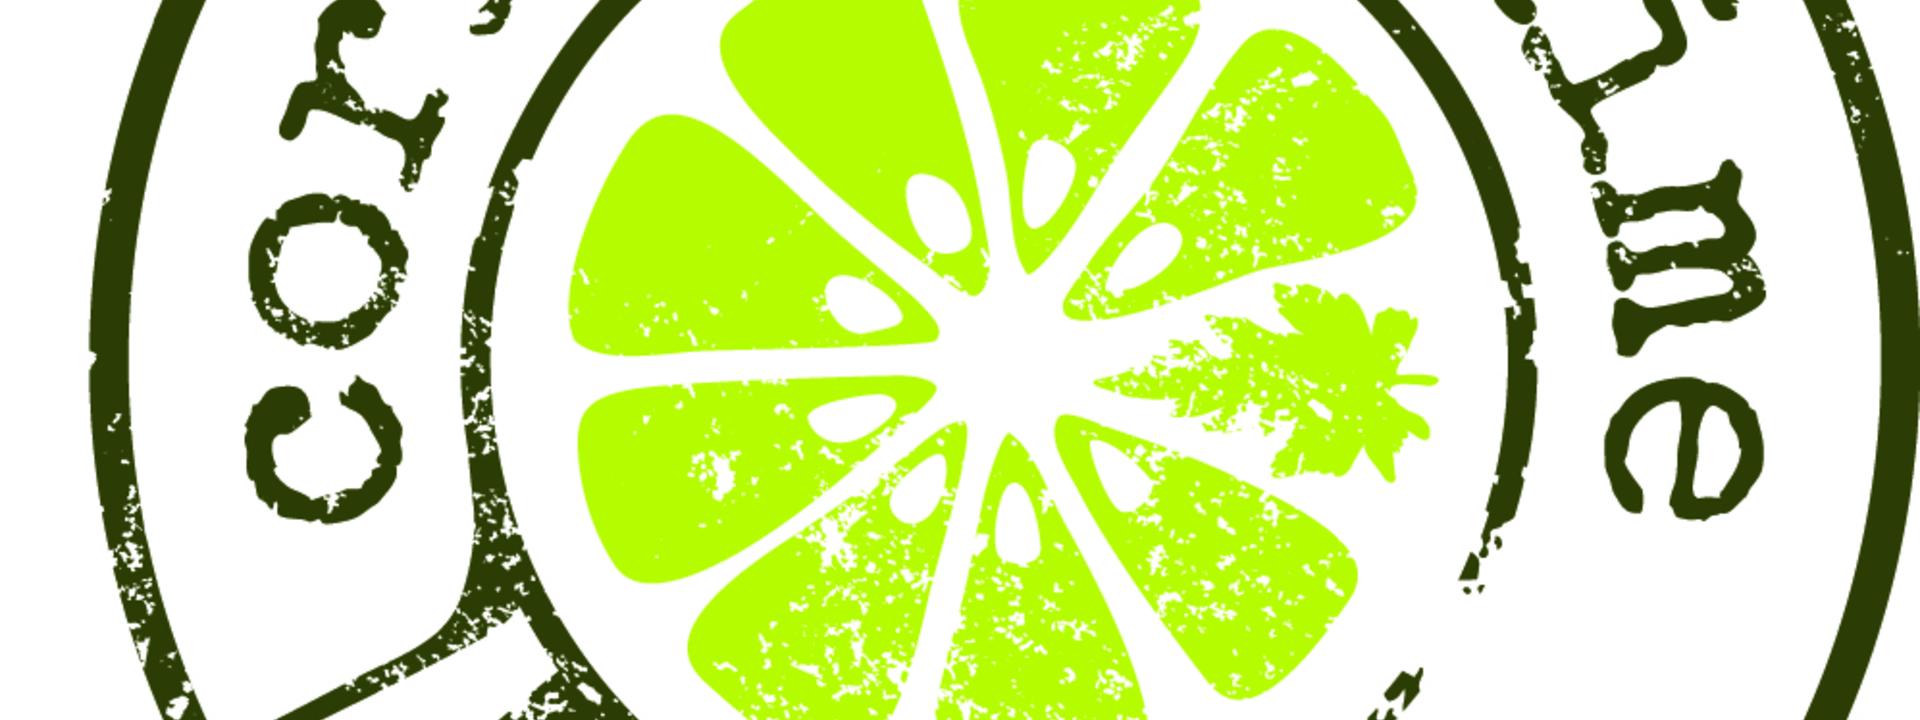 coriander-lime-kitchen-logo2-copy.jpg